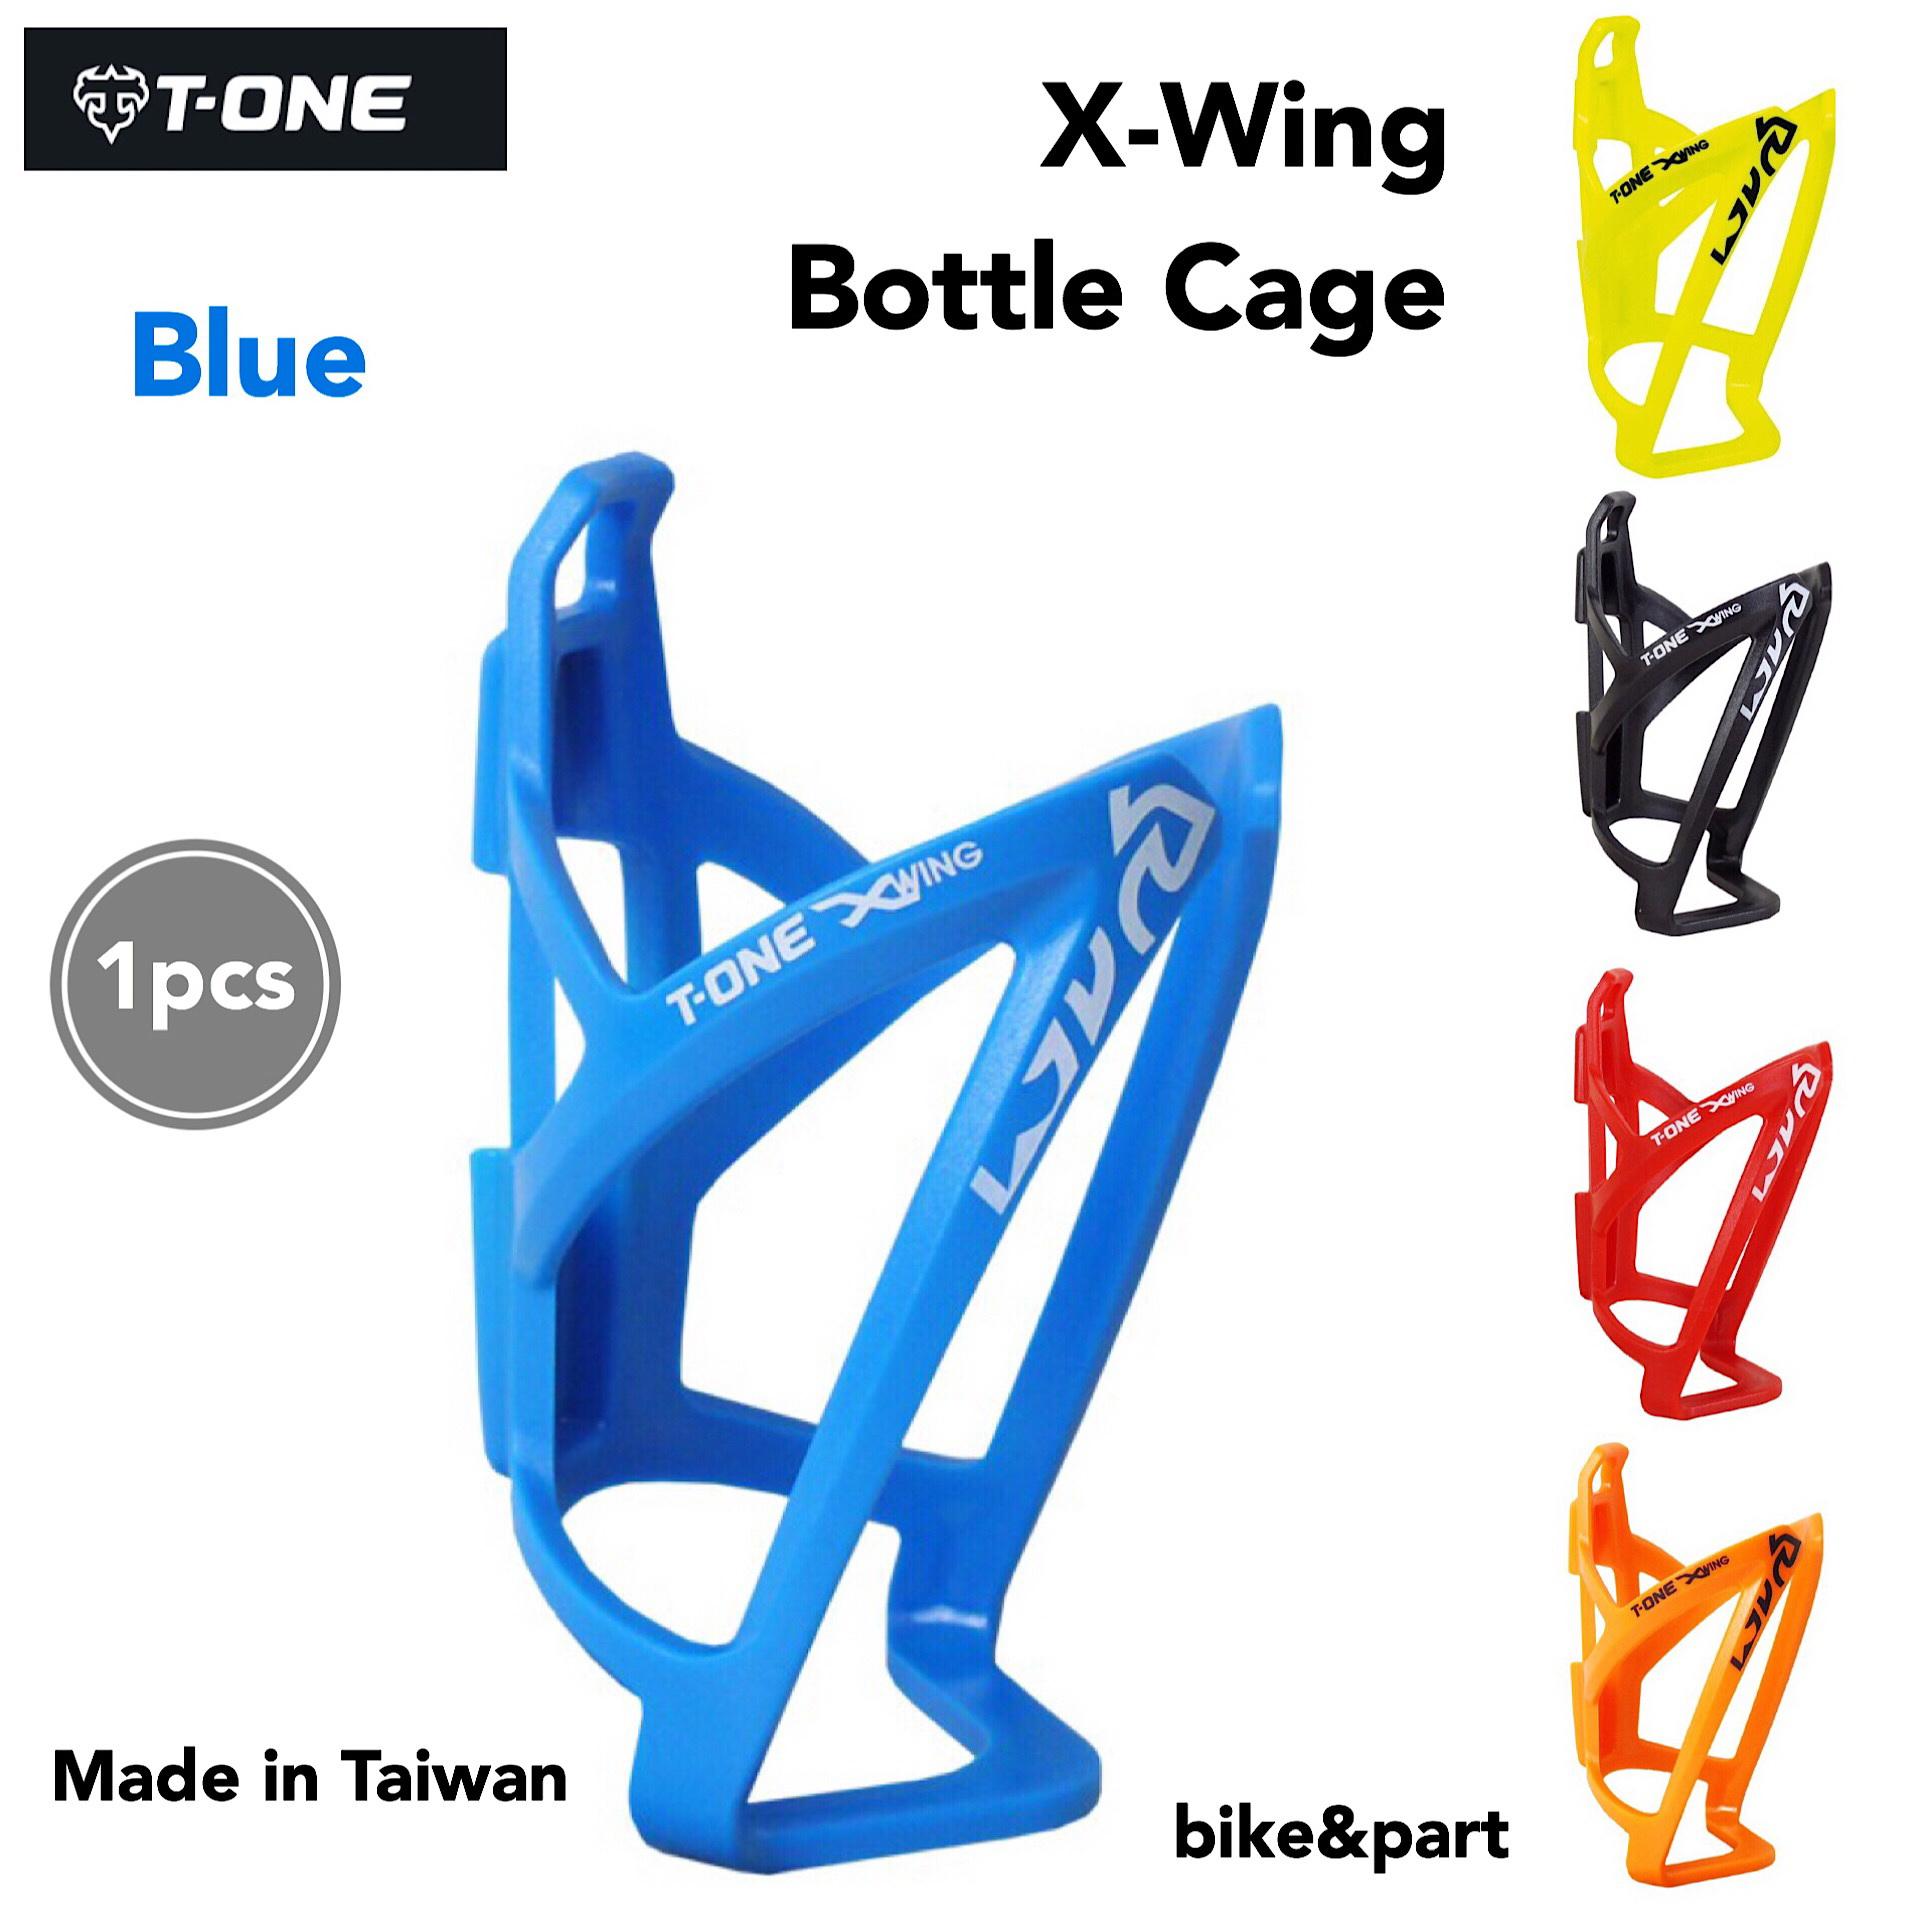 ขากระติก T-ONE X-WING Bottle Cage (T-BC07)